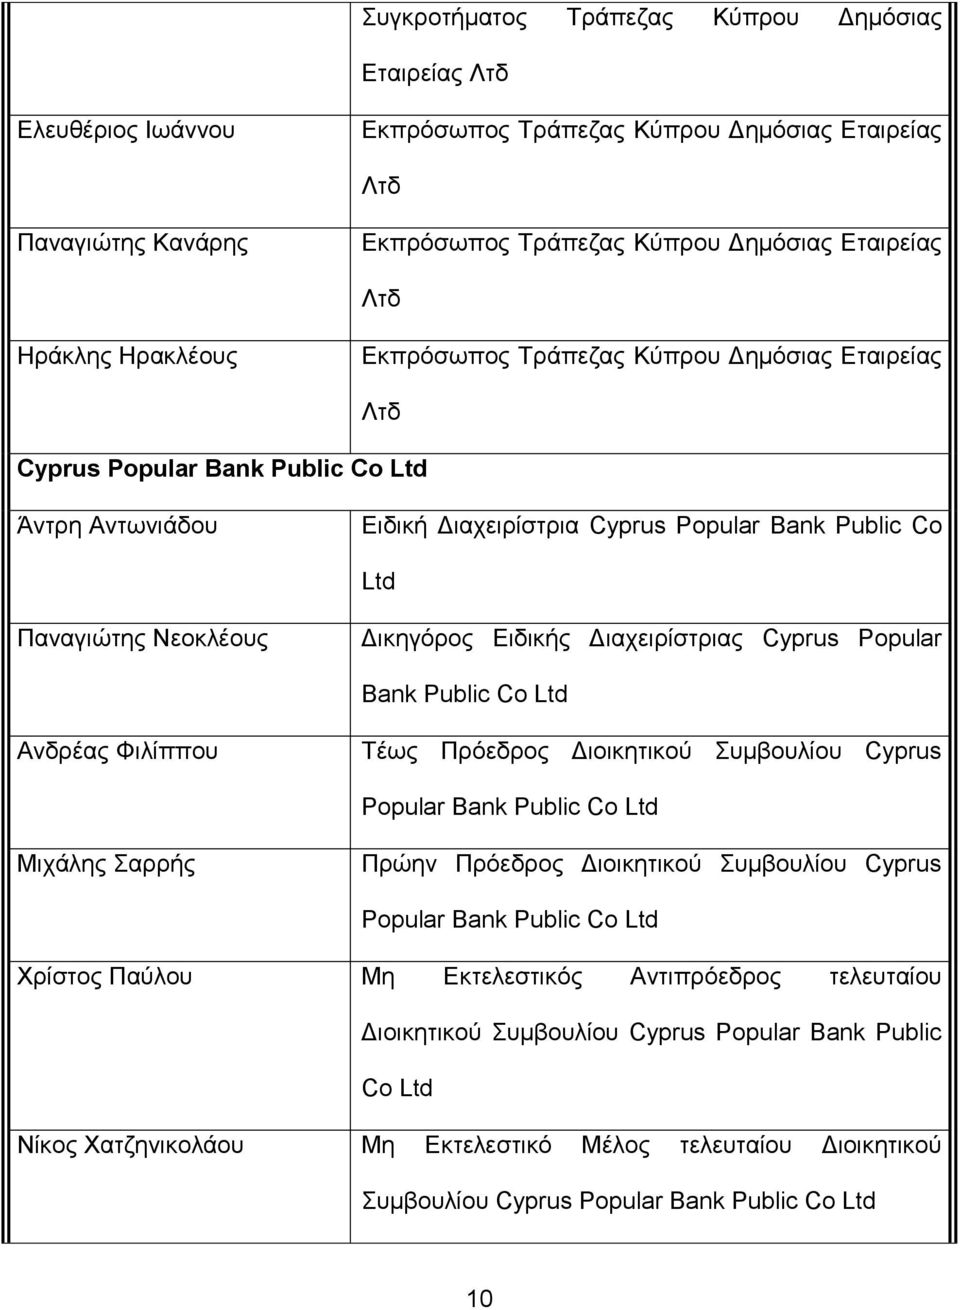 Γηαρεηξίζηξηαο Cyprus Popular Bank Public Co Ltd Αλδξέαο Φηιίππνπ Σέσο Πξόεδξνο Γηνηθεηηθνύ πκβνπιίνπ Cyprus Popular Bank Public Co Ltd Μηράιεο αξξήο Πξώελ Πξόεδξνο Γηνηθεηηθνύ πκβνπιίνπ Cyprus